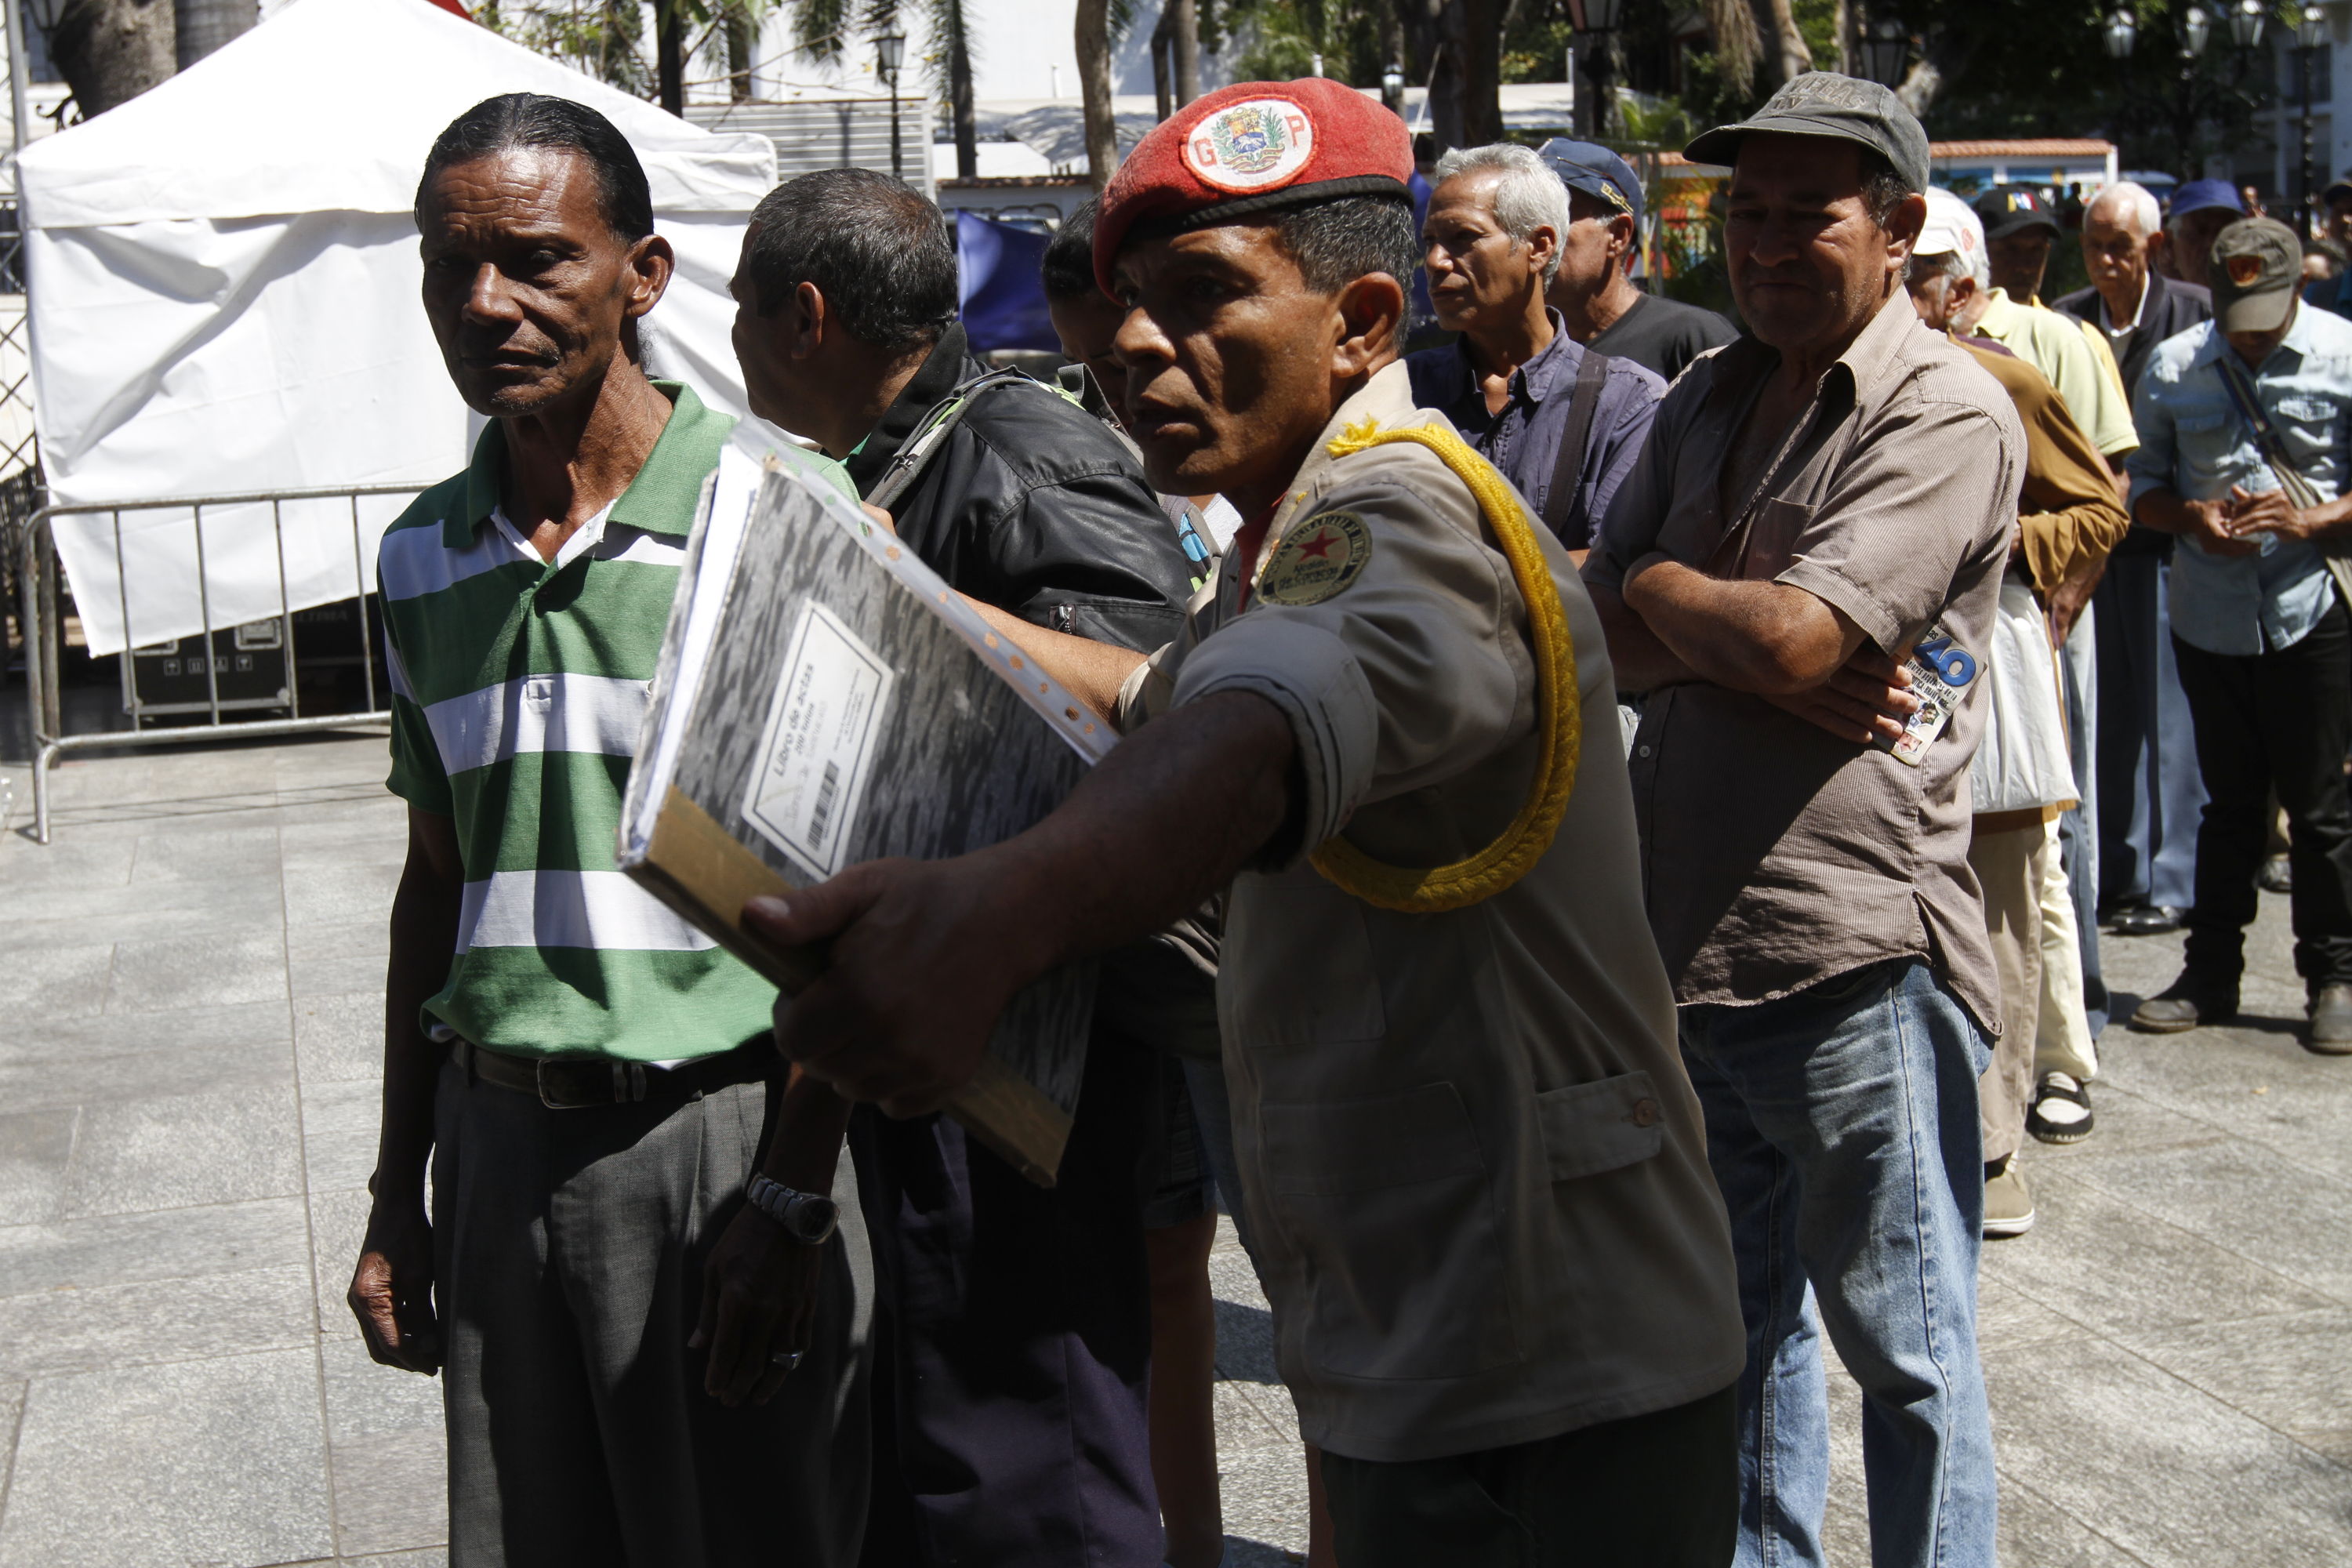 LA FOTO irónica: Llénate de alegría con estos venezolanos firmando a favor de Maduro & Co.